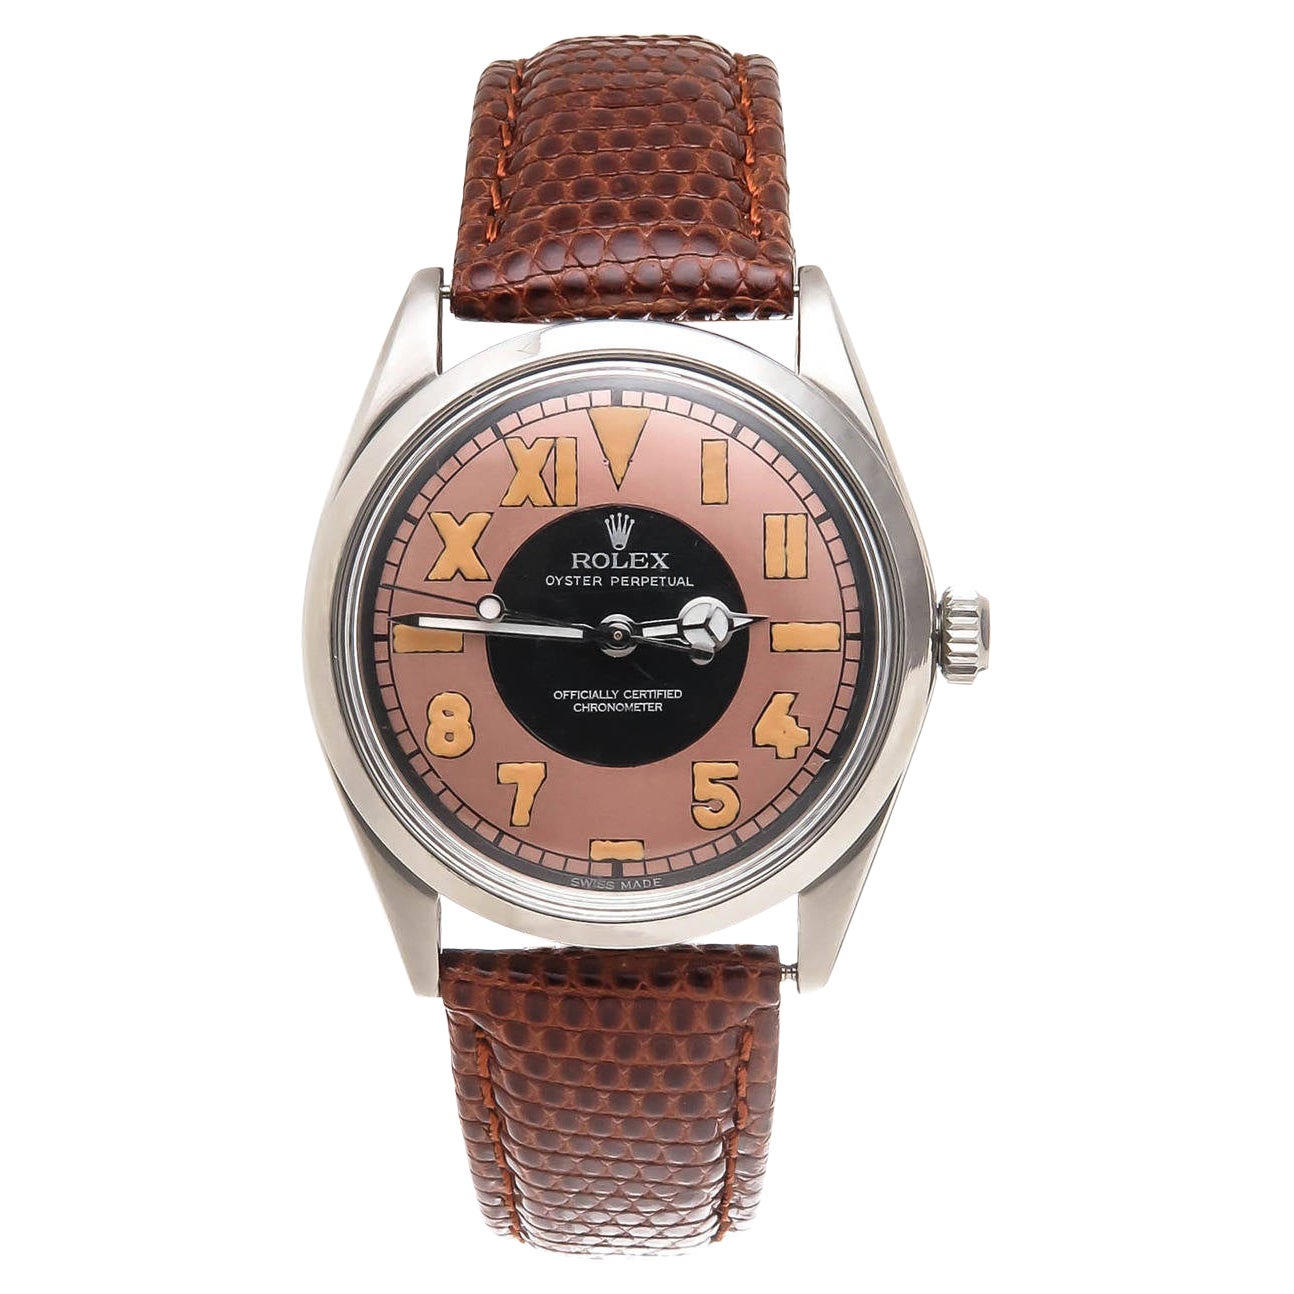 Montre-bracelet Rolex Oyster Perpetual Chronometer en acier inoxydable, réf. 5552